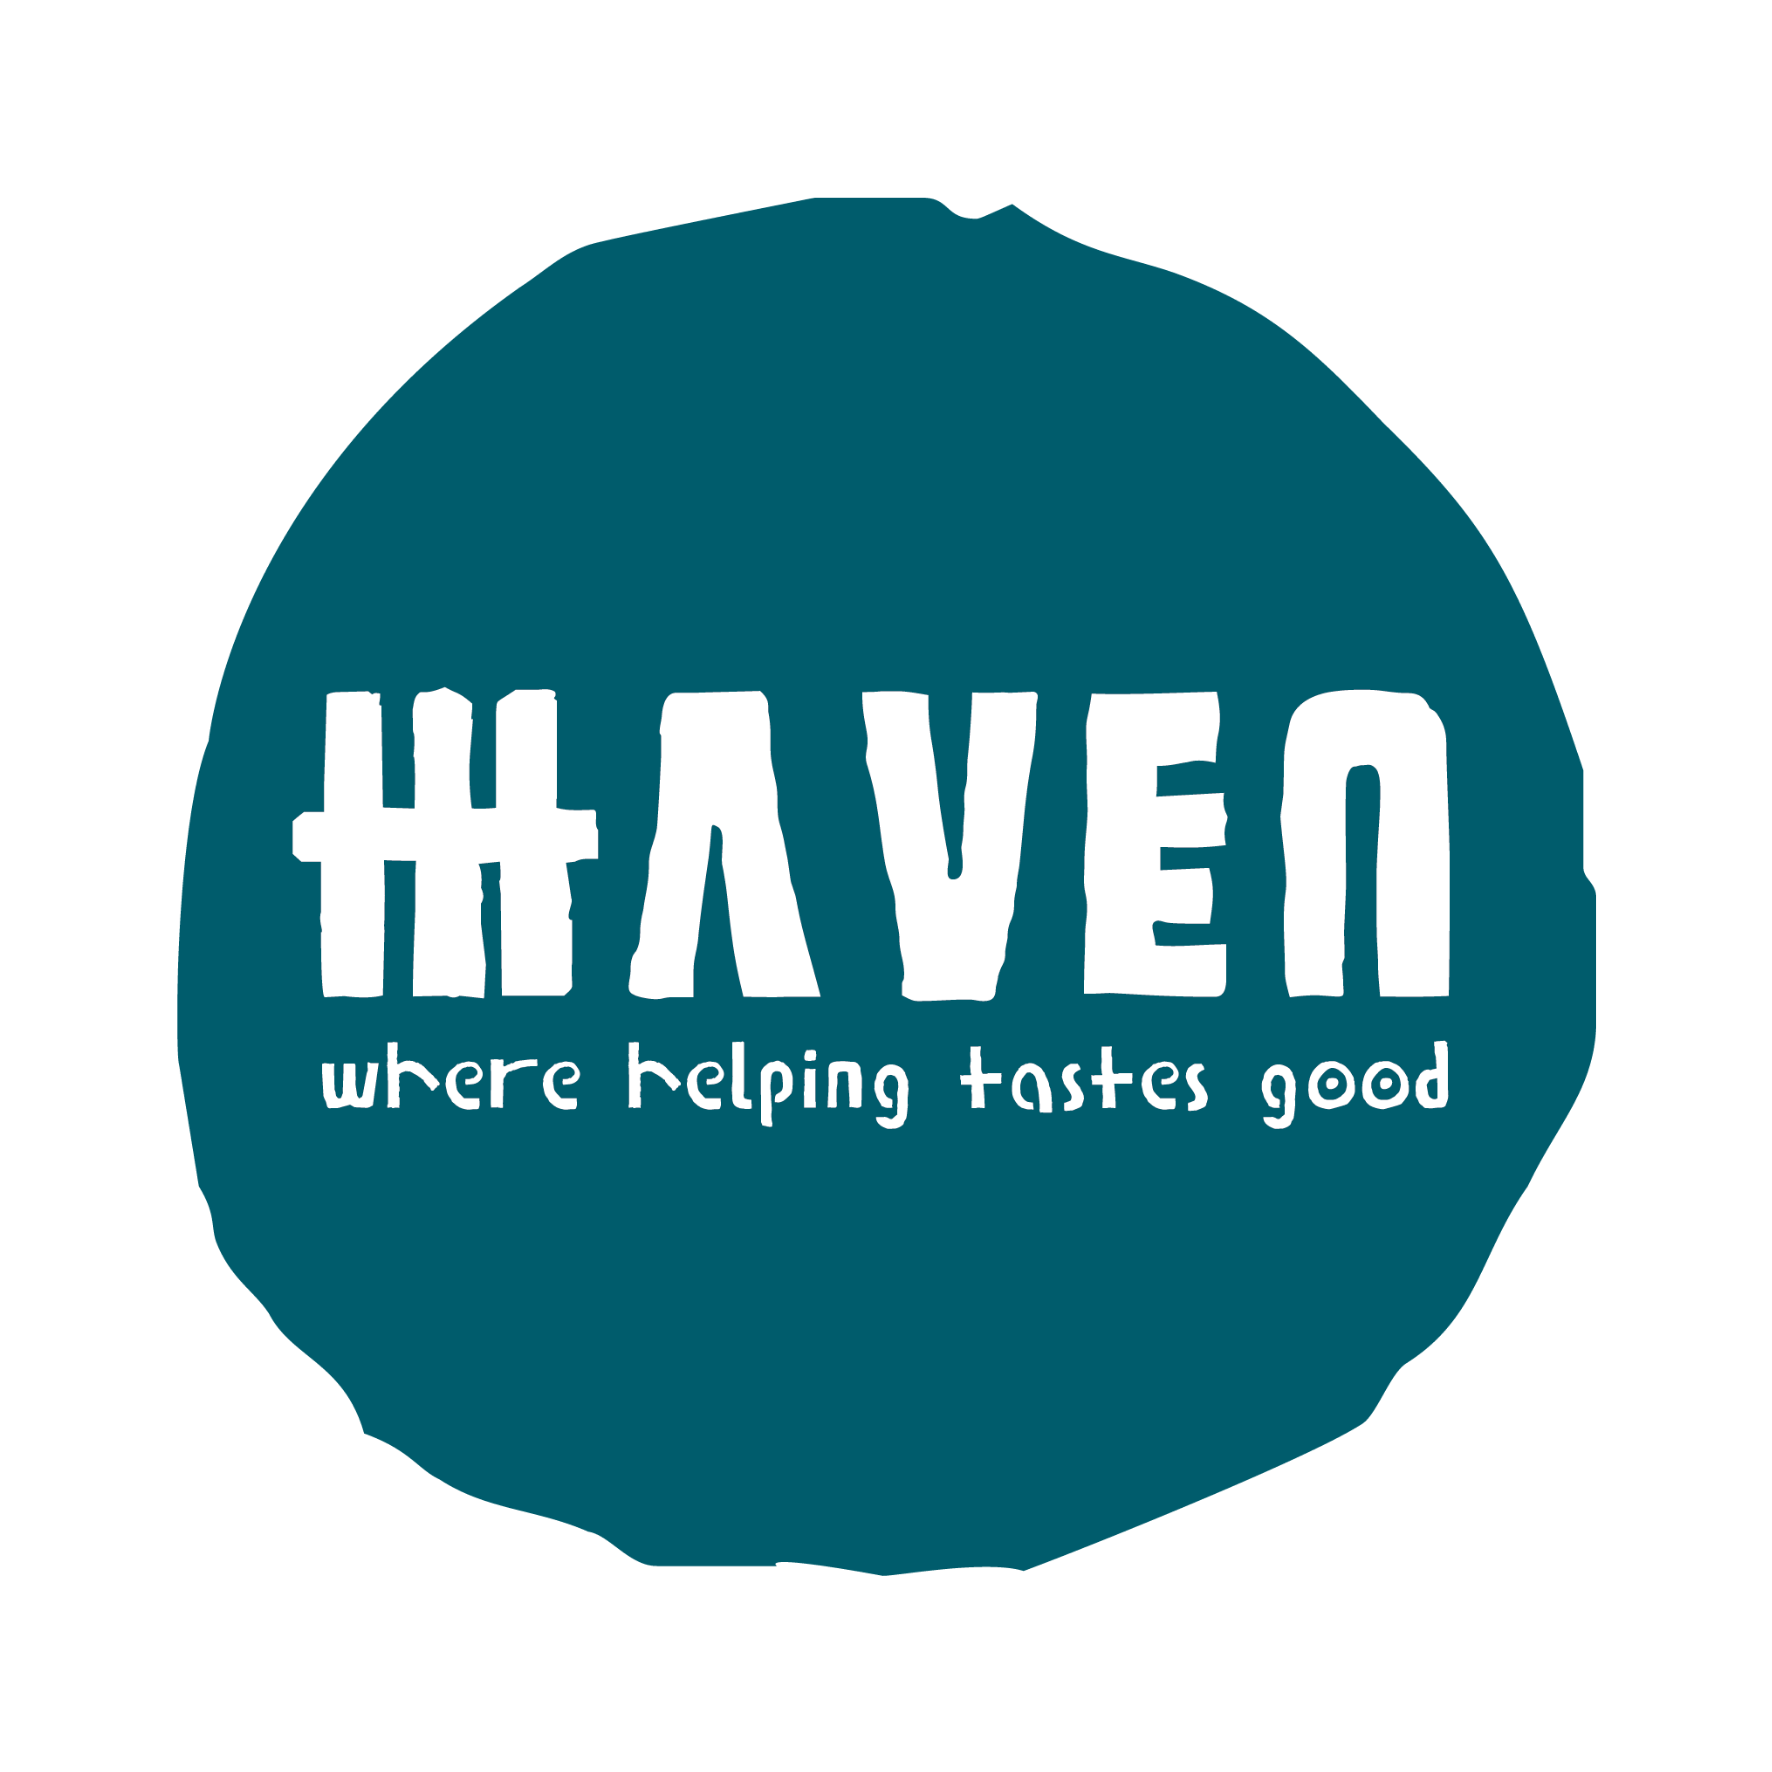 HAVEN logo (15 x 15 cm)